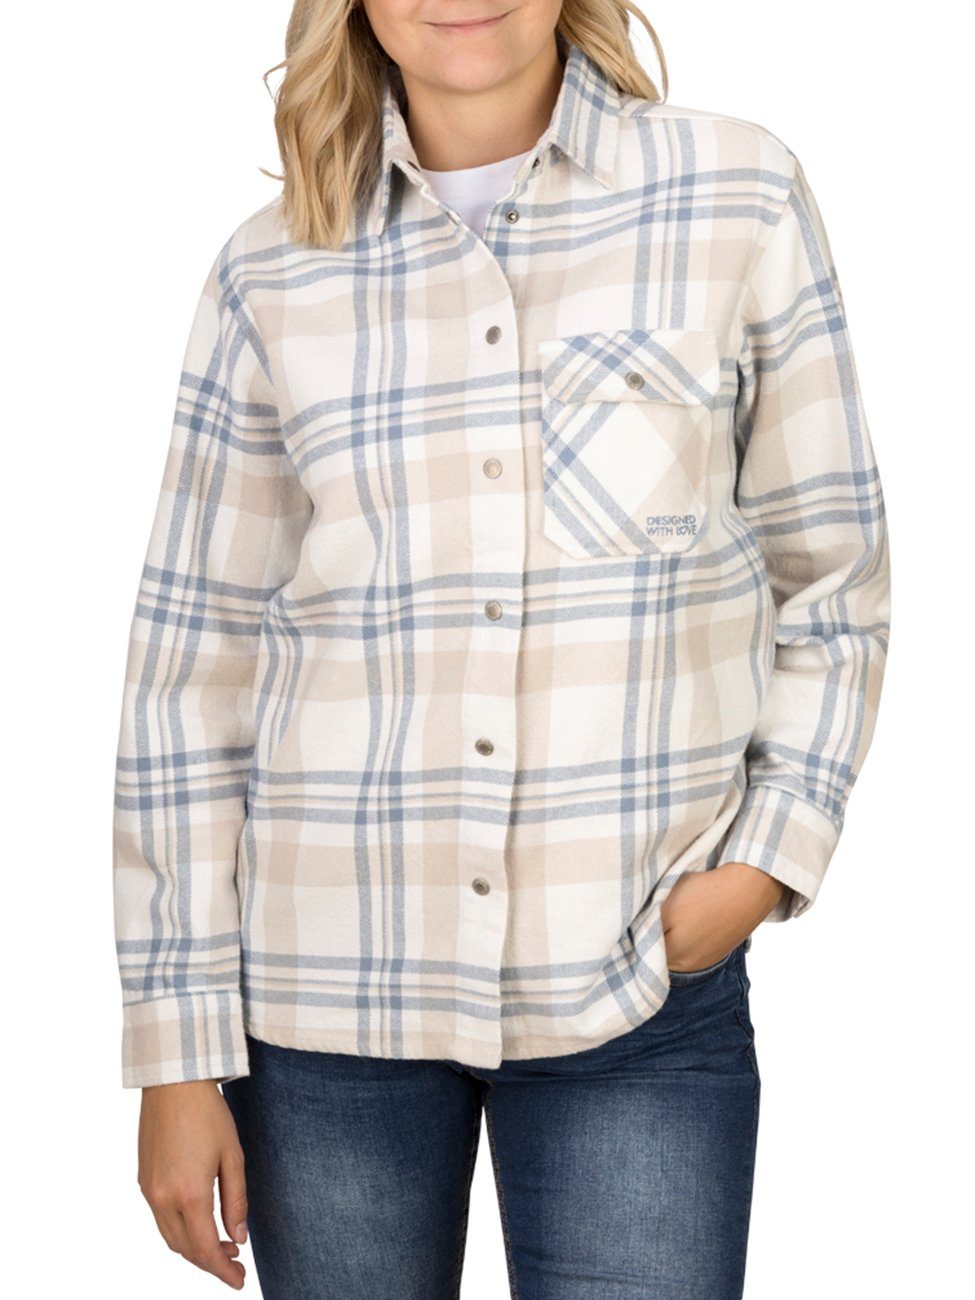 DENIMFY Hemdbluse Damen Bluse DFIsabella Regular Fit Flanellhemd aus 100% Baumwolle Offwhite-Birch Beige-Morning Fog Blue